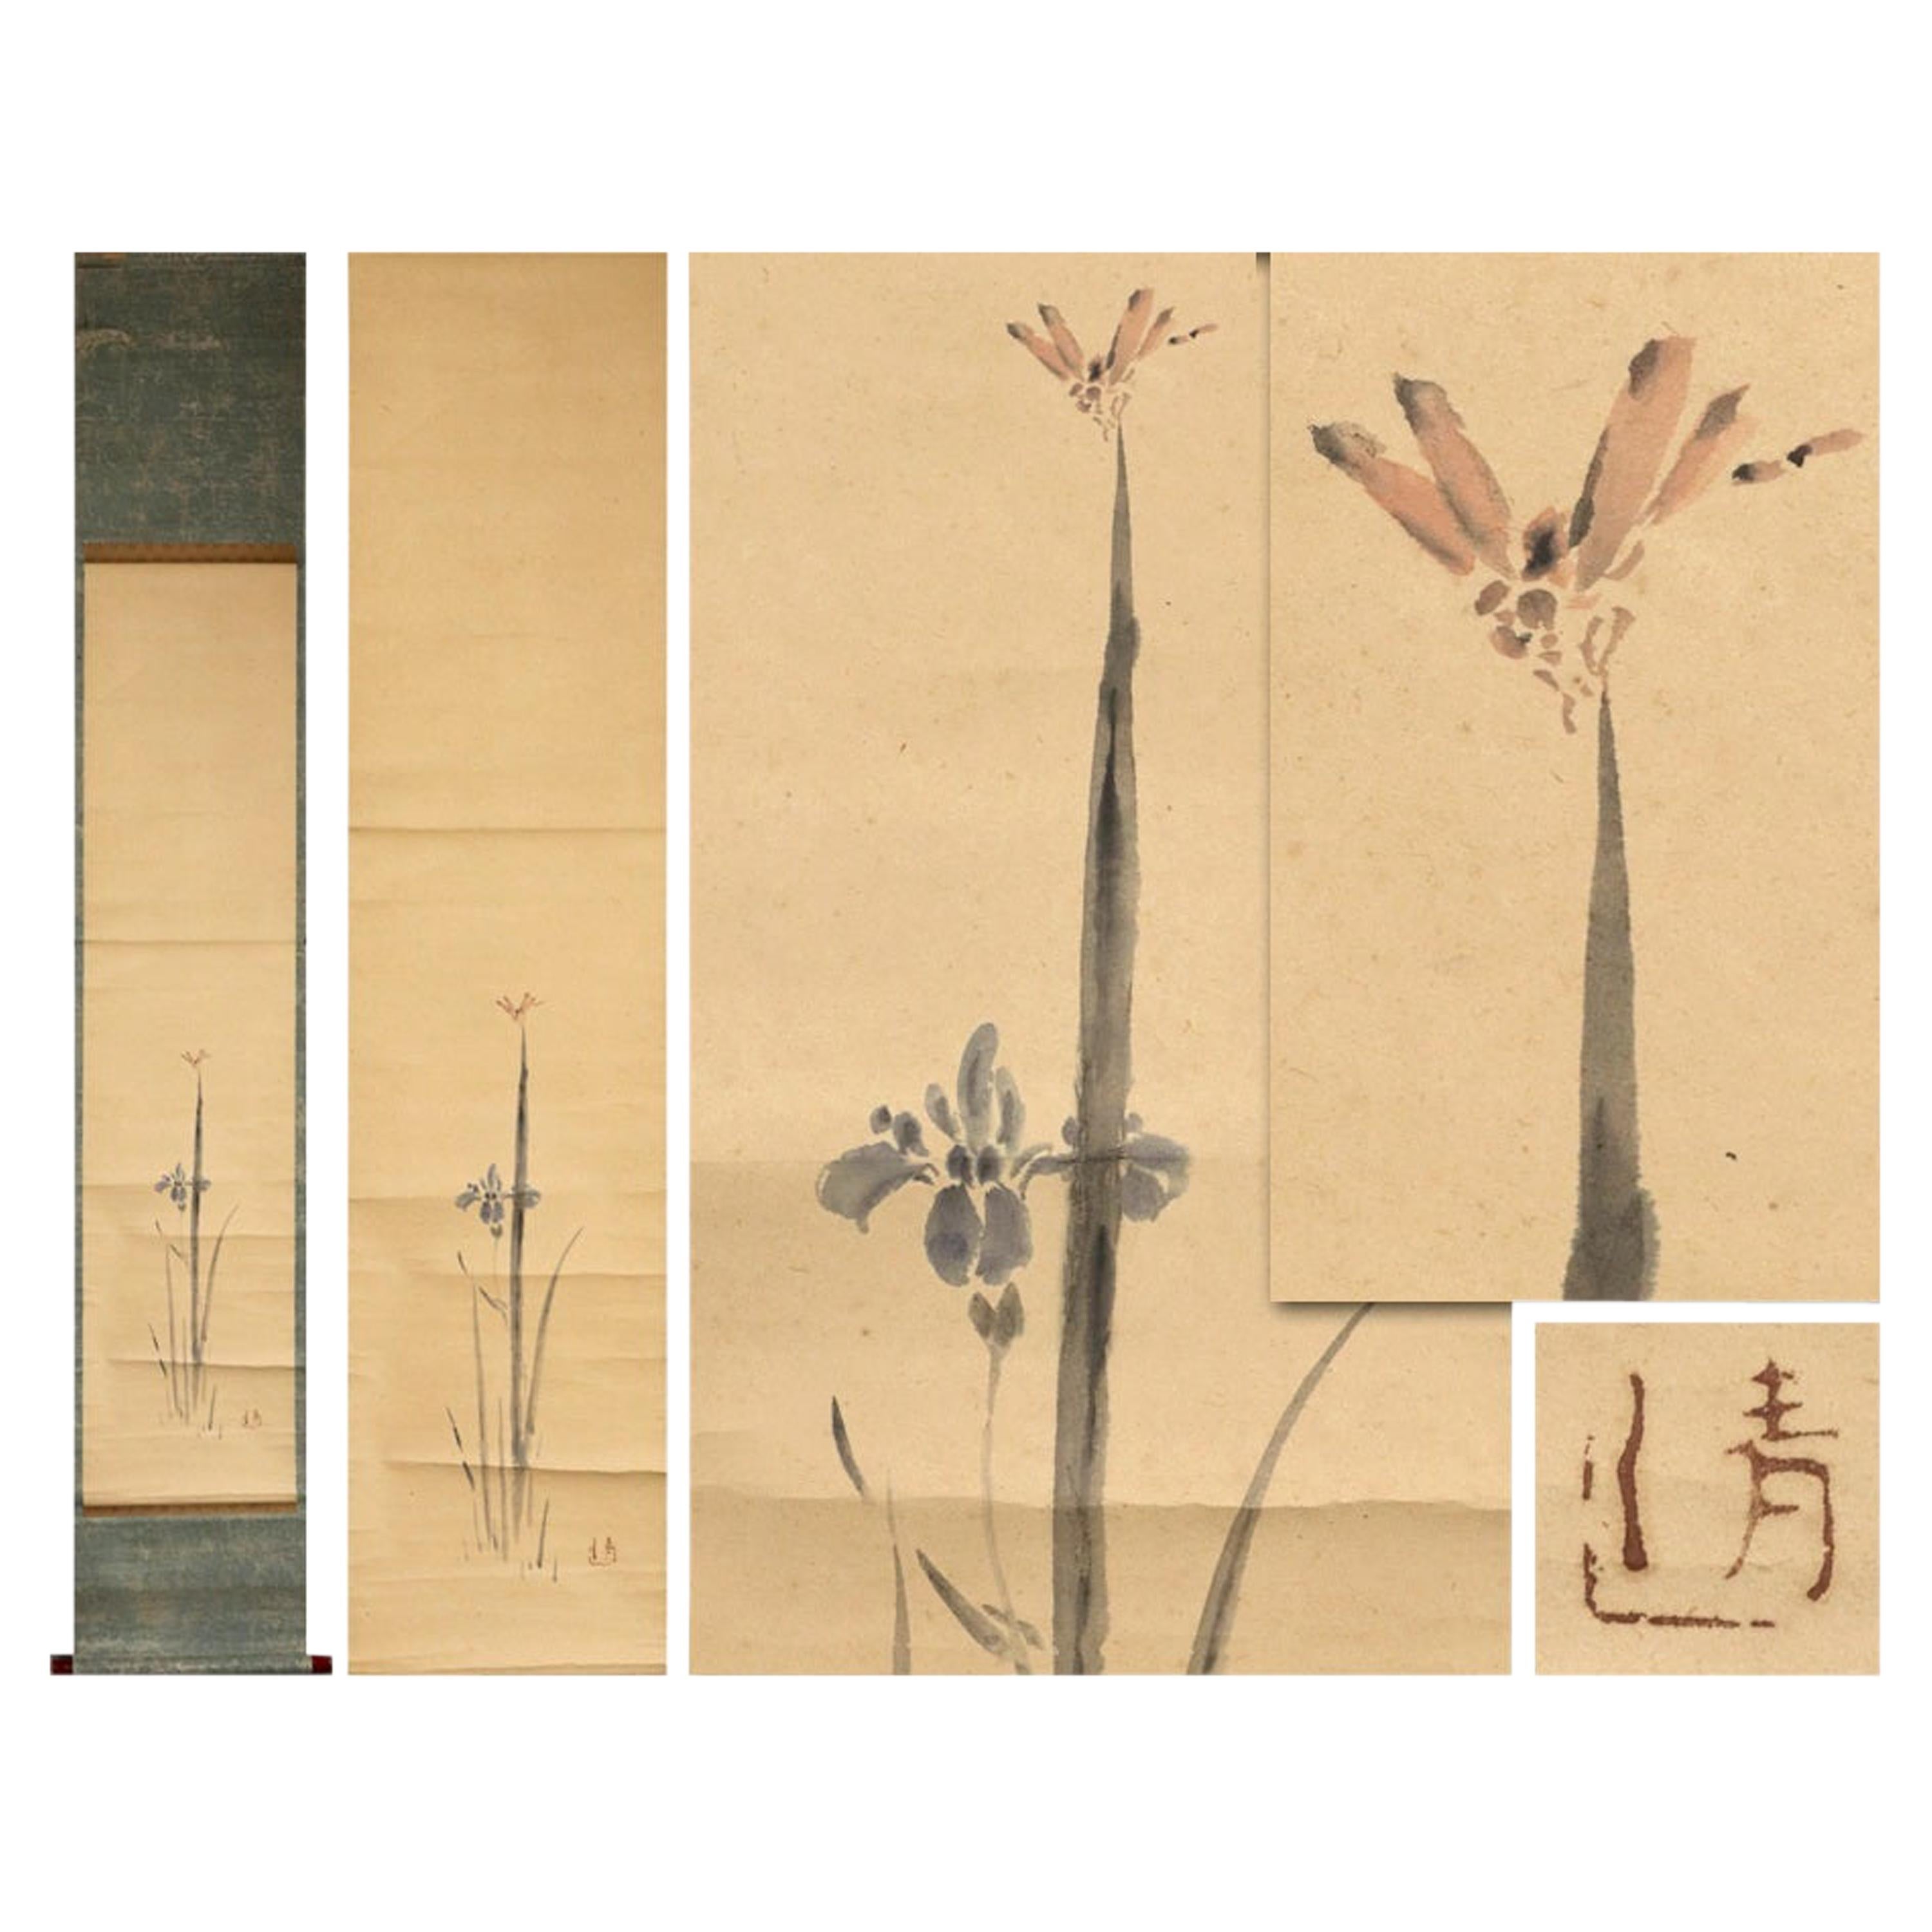 Blumenszene aus der Edo-Periode mit Schnörkeln aus Japan, Künstler Kiyoshi Watanabe, 19. Jahrhundert